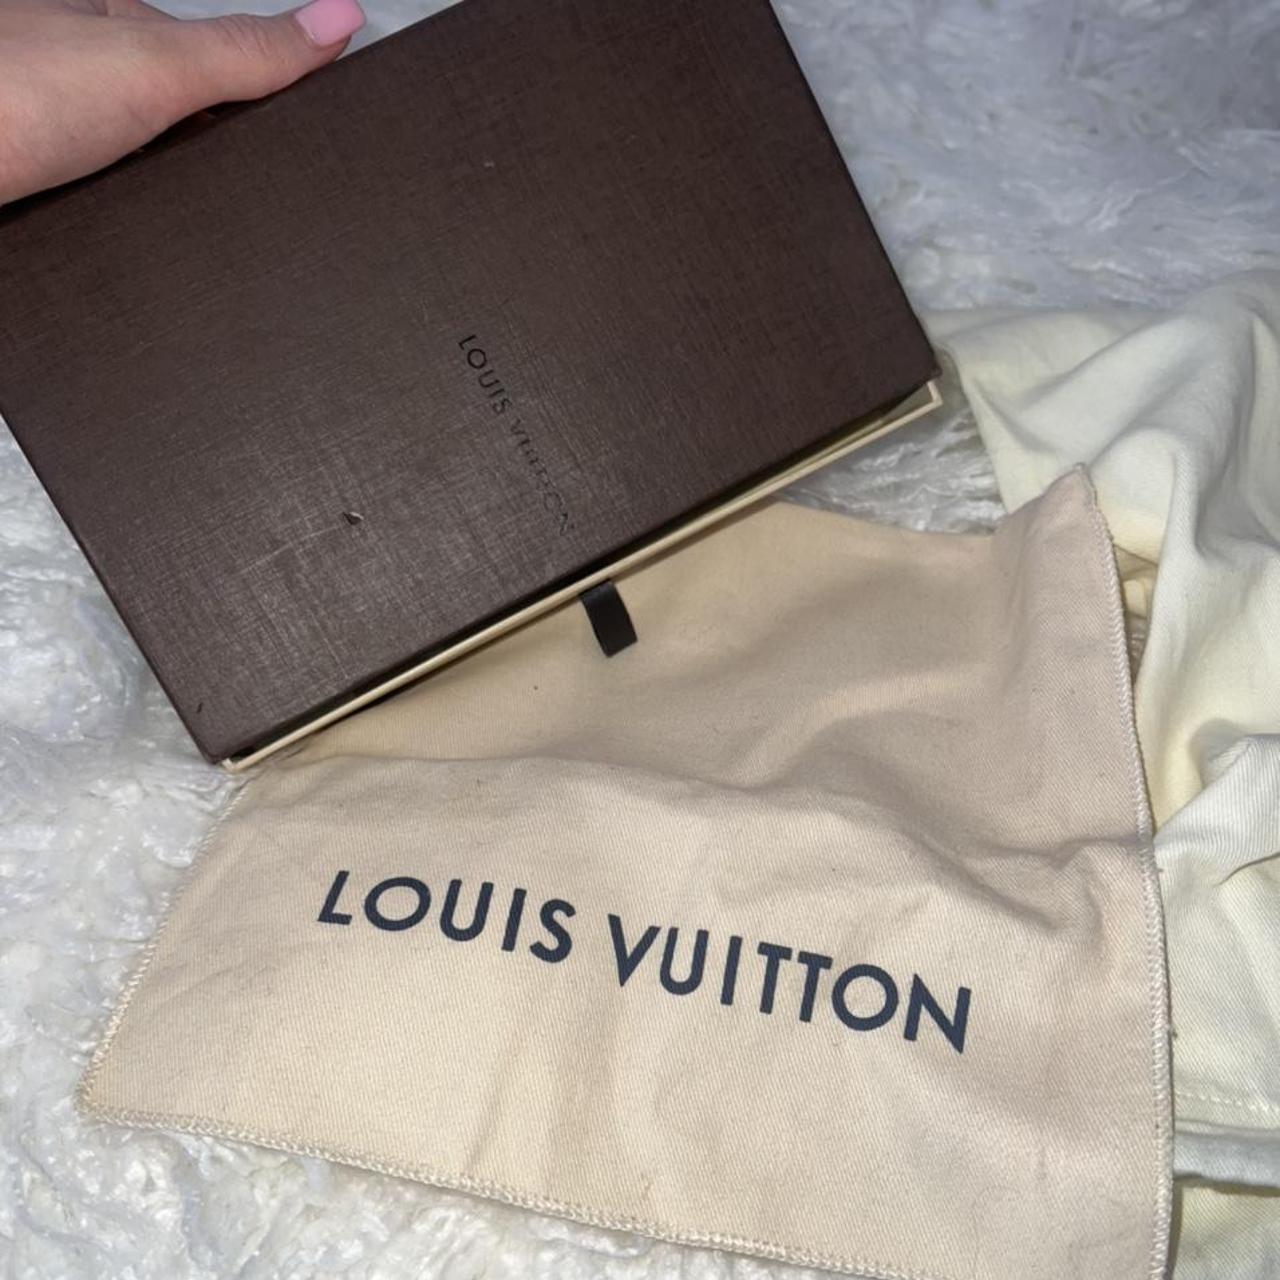 This is an authentic Louis Vuitton Empreinte Pallas. - Depop